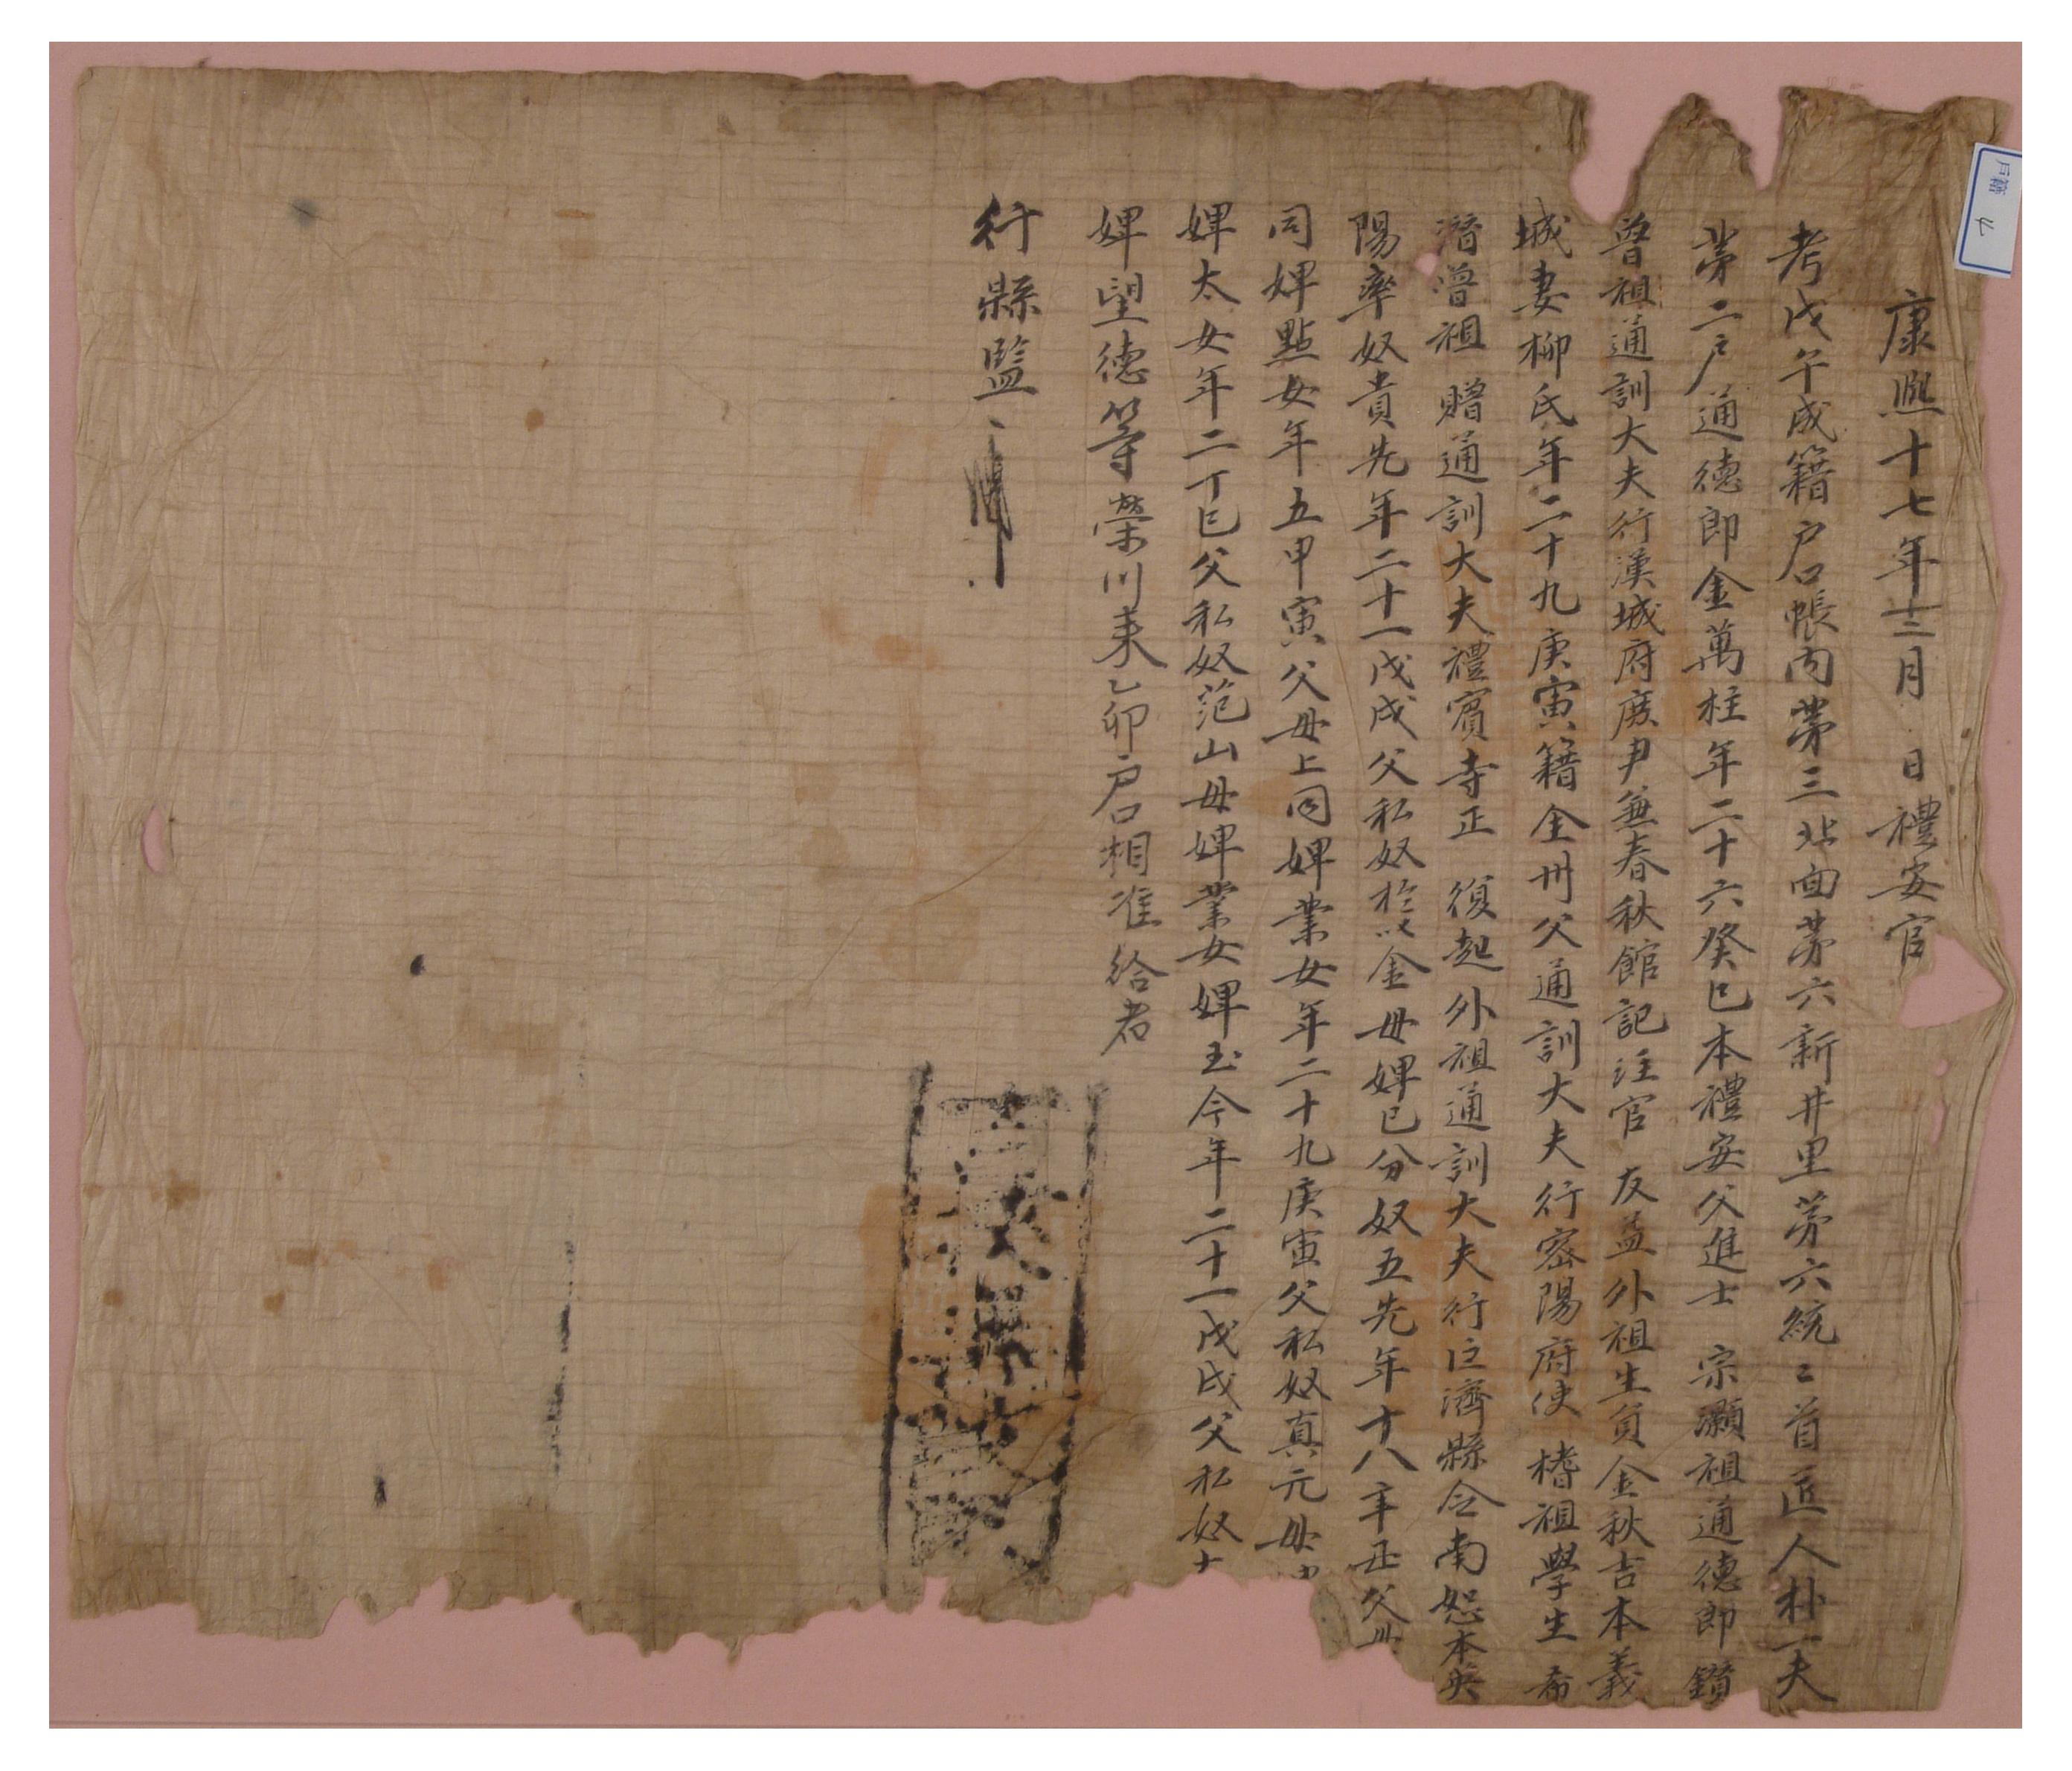 1678년 예안에서 통덕랑을 지내고 있는 김만주가 예안현에 제출한 호구단자